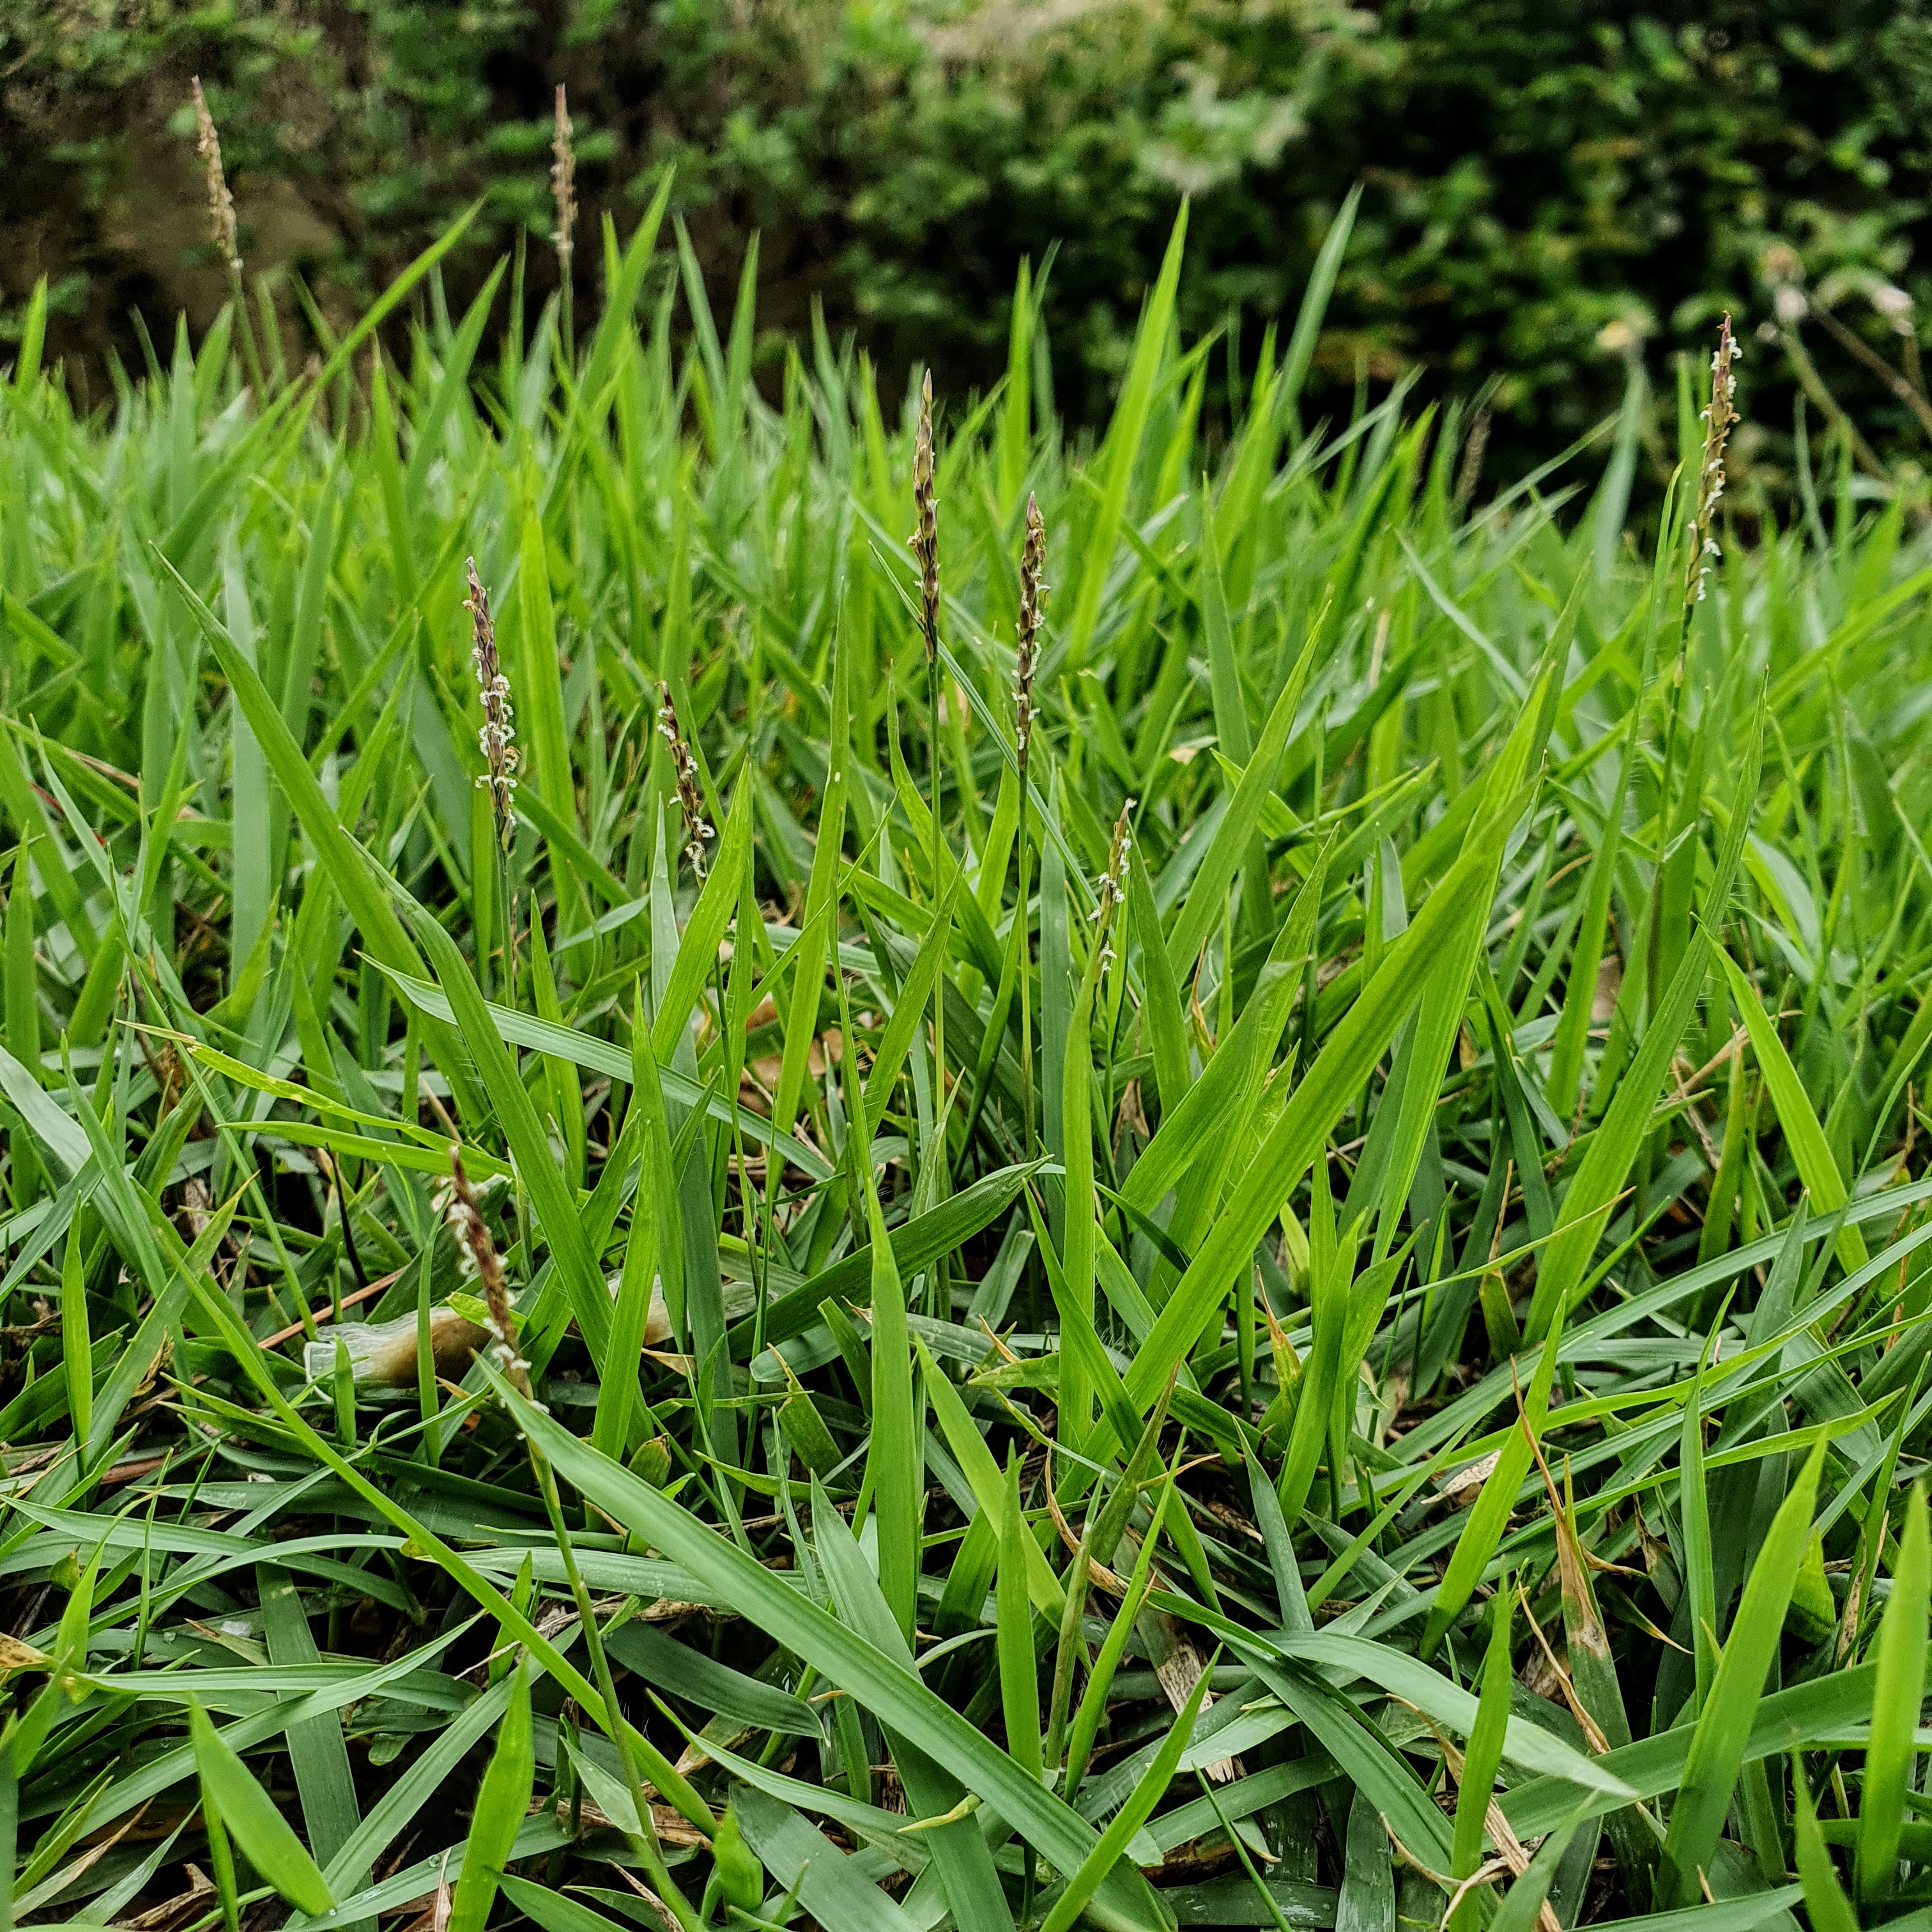 Detalhe da foilhagem e da inflorescência da grama-esmeralda, verdinha durante a primavera de BH (estação chuvosa).